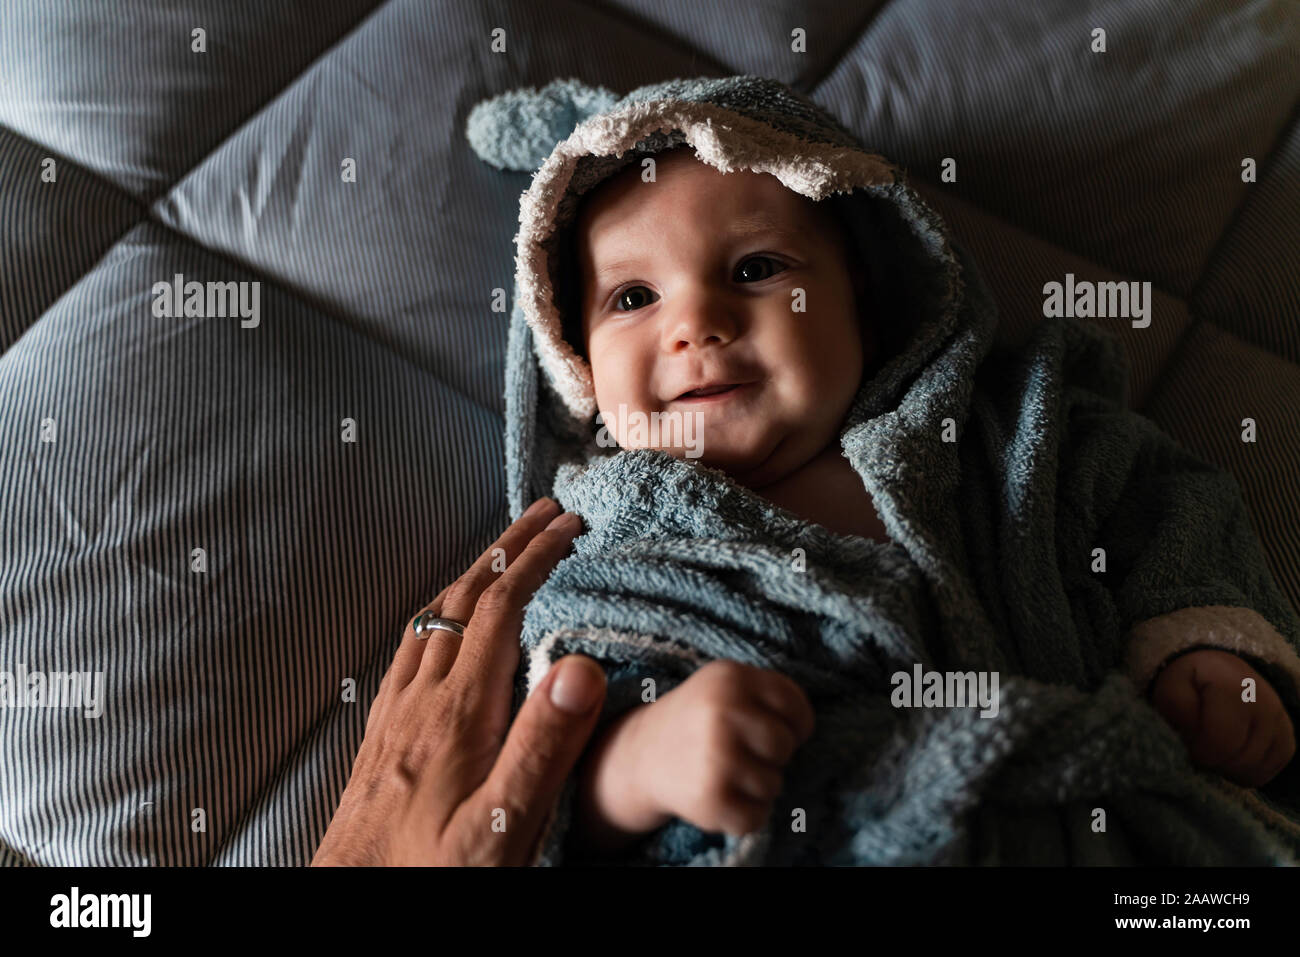 Ritratto di bambina giacente sul letto avvolto con forma di squalo asciugamano toccato dalla madre la mano Foto Stock